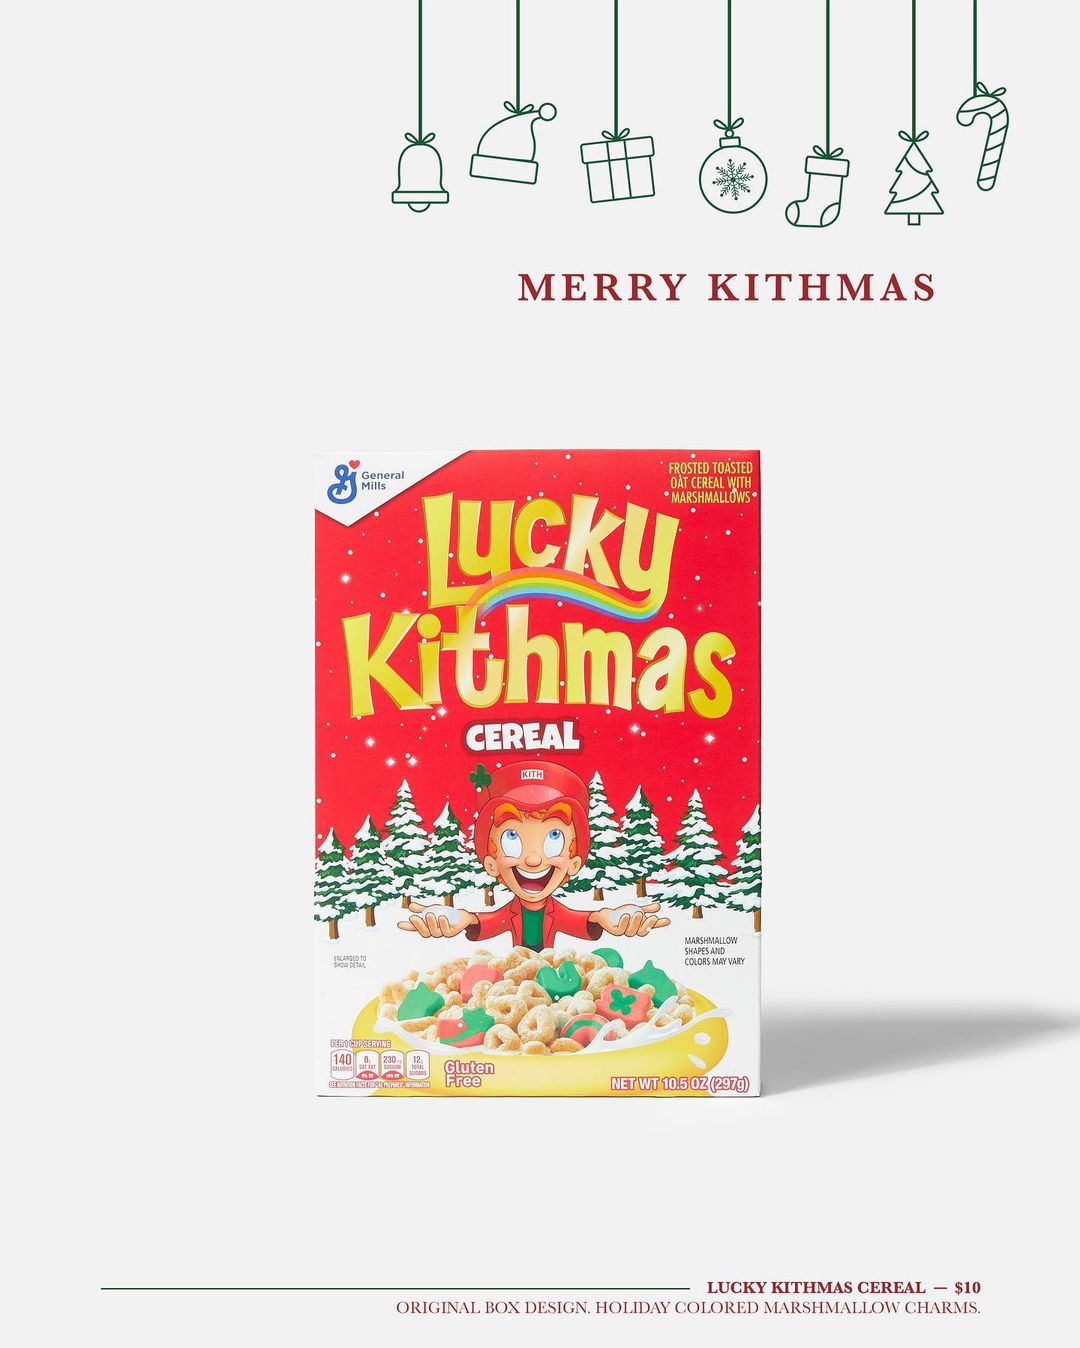 KITH XMAS 2020 & KITH TREATS FOR LUCKY CHARMS が12/7 発売 (キス クリスマス)